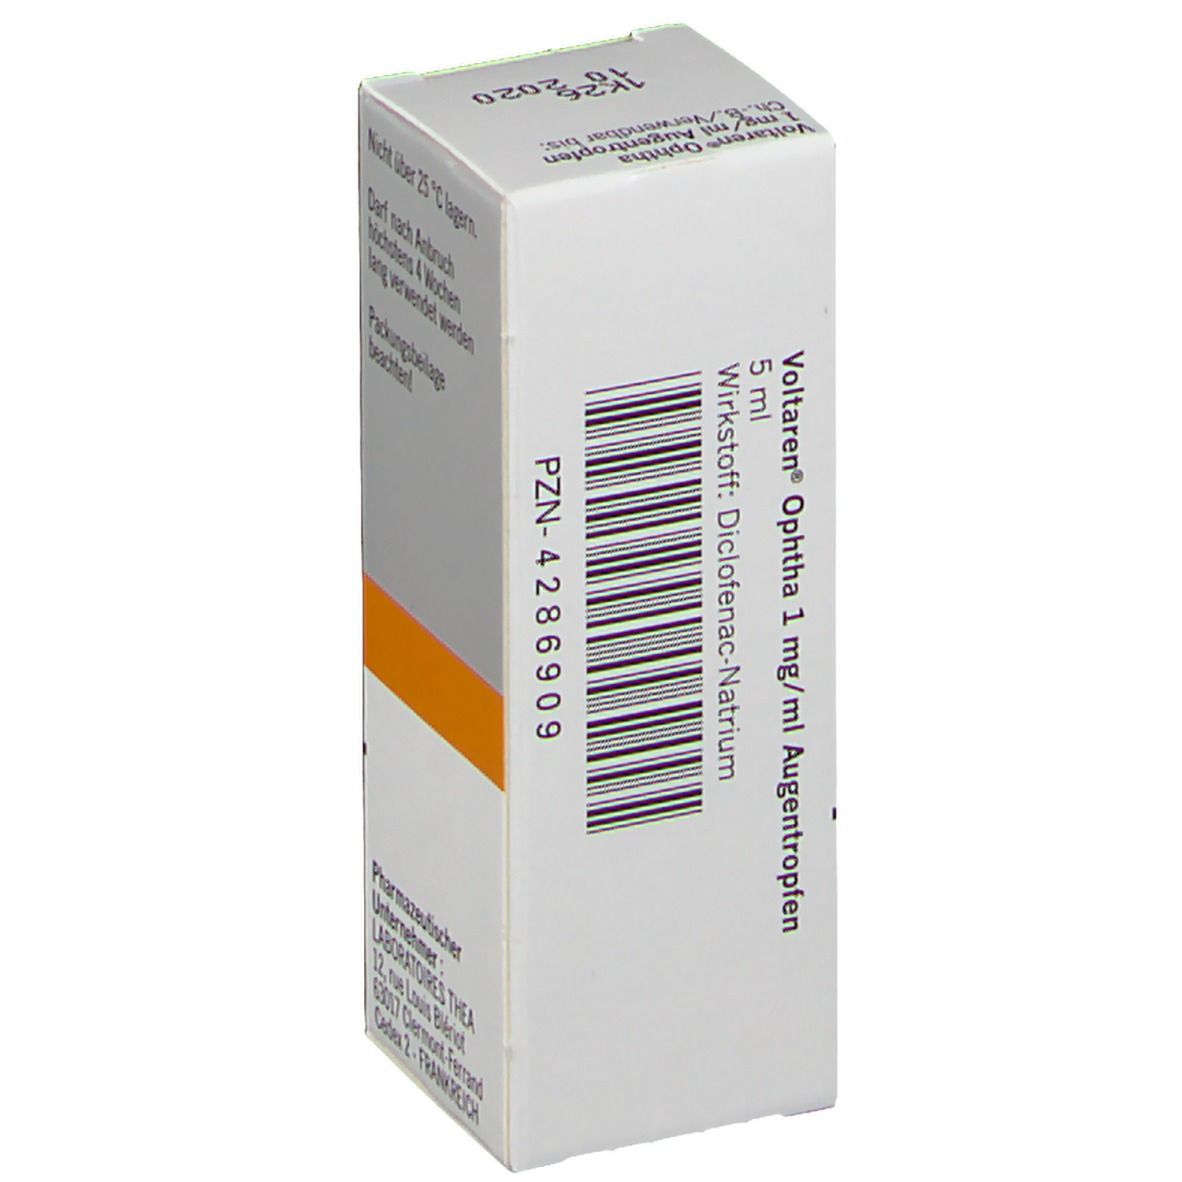 VOLTAREN® OPHTHA 1 mg/ml